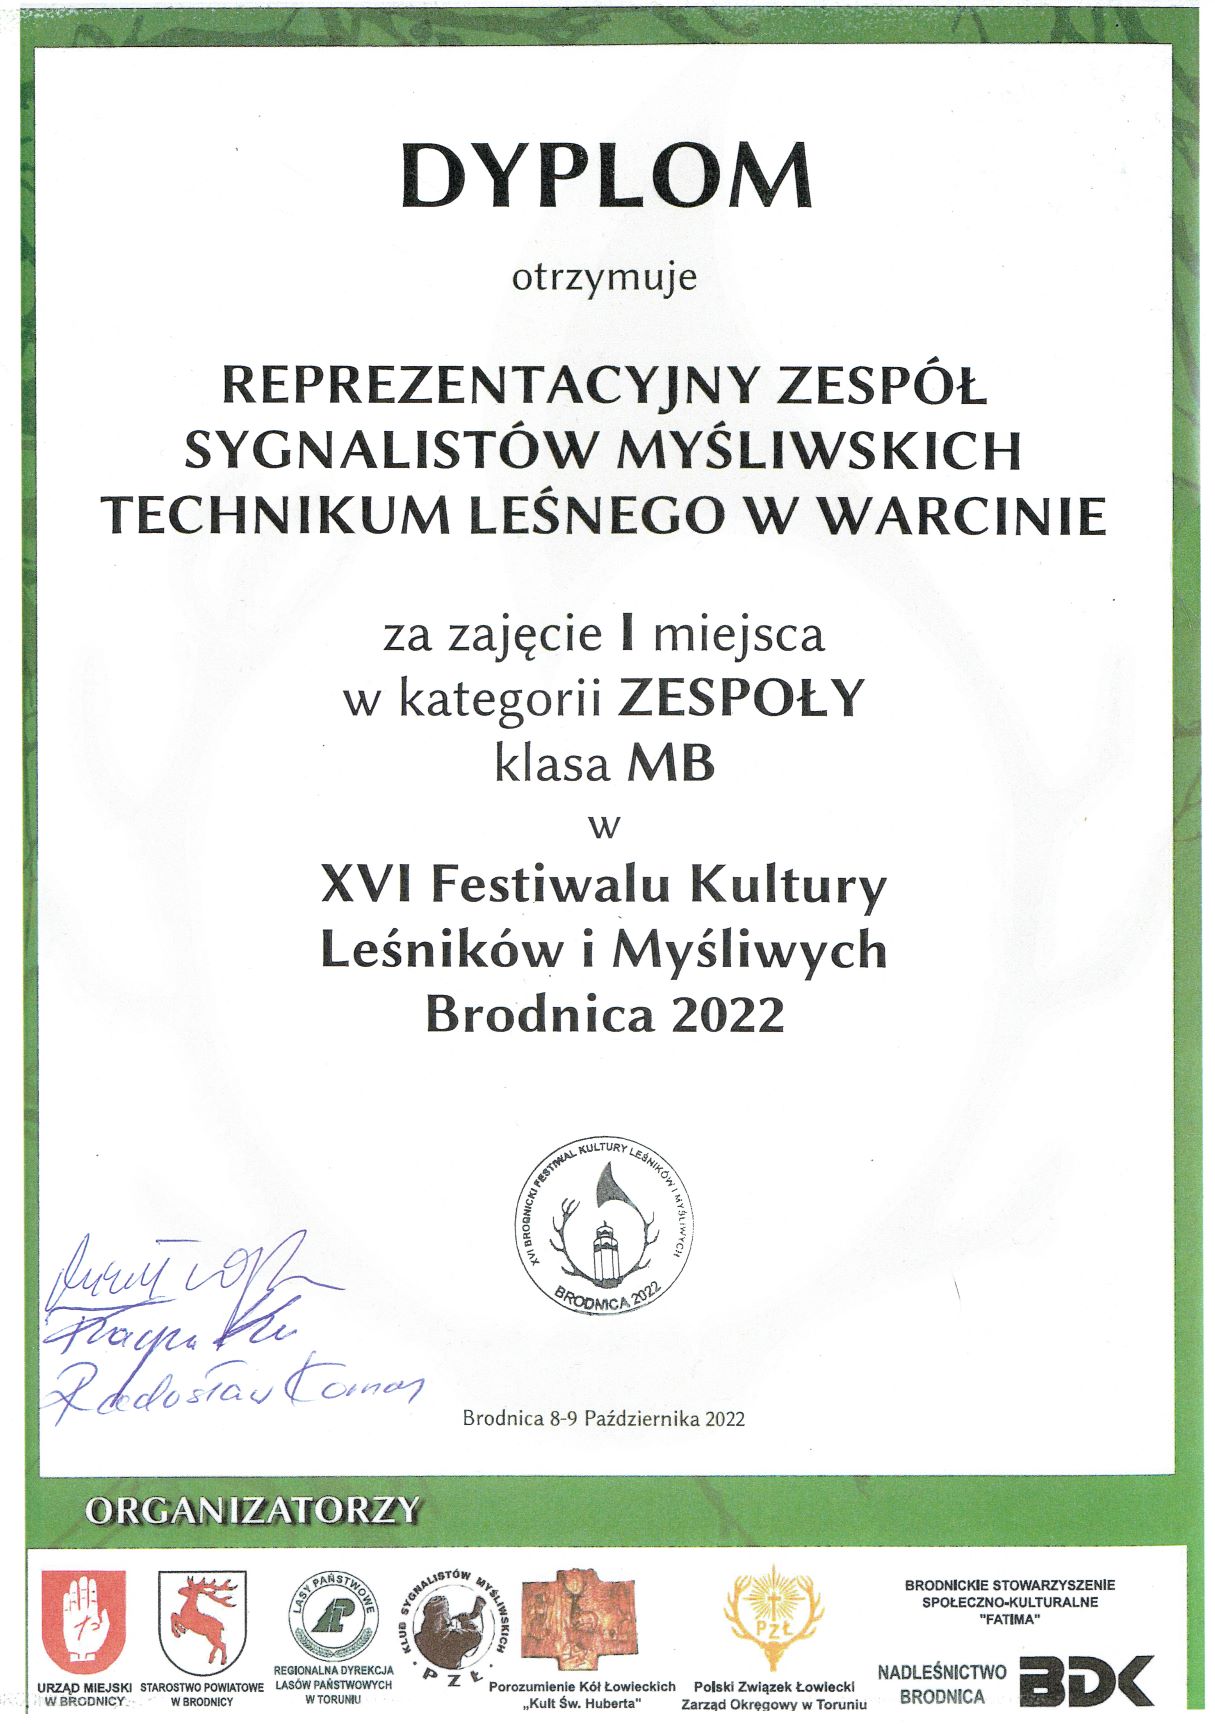 Dyplom za zajęcie I miejsca w klasie MB przez Zespół Reprezentacyjny Sygnalistów Myśliwskich Technikum Leśnego w Warcinie